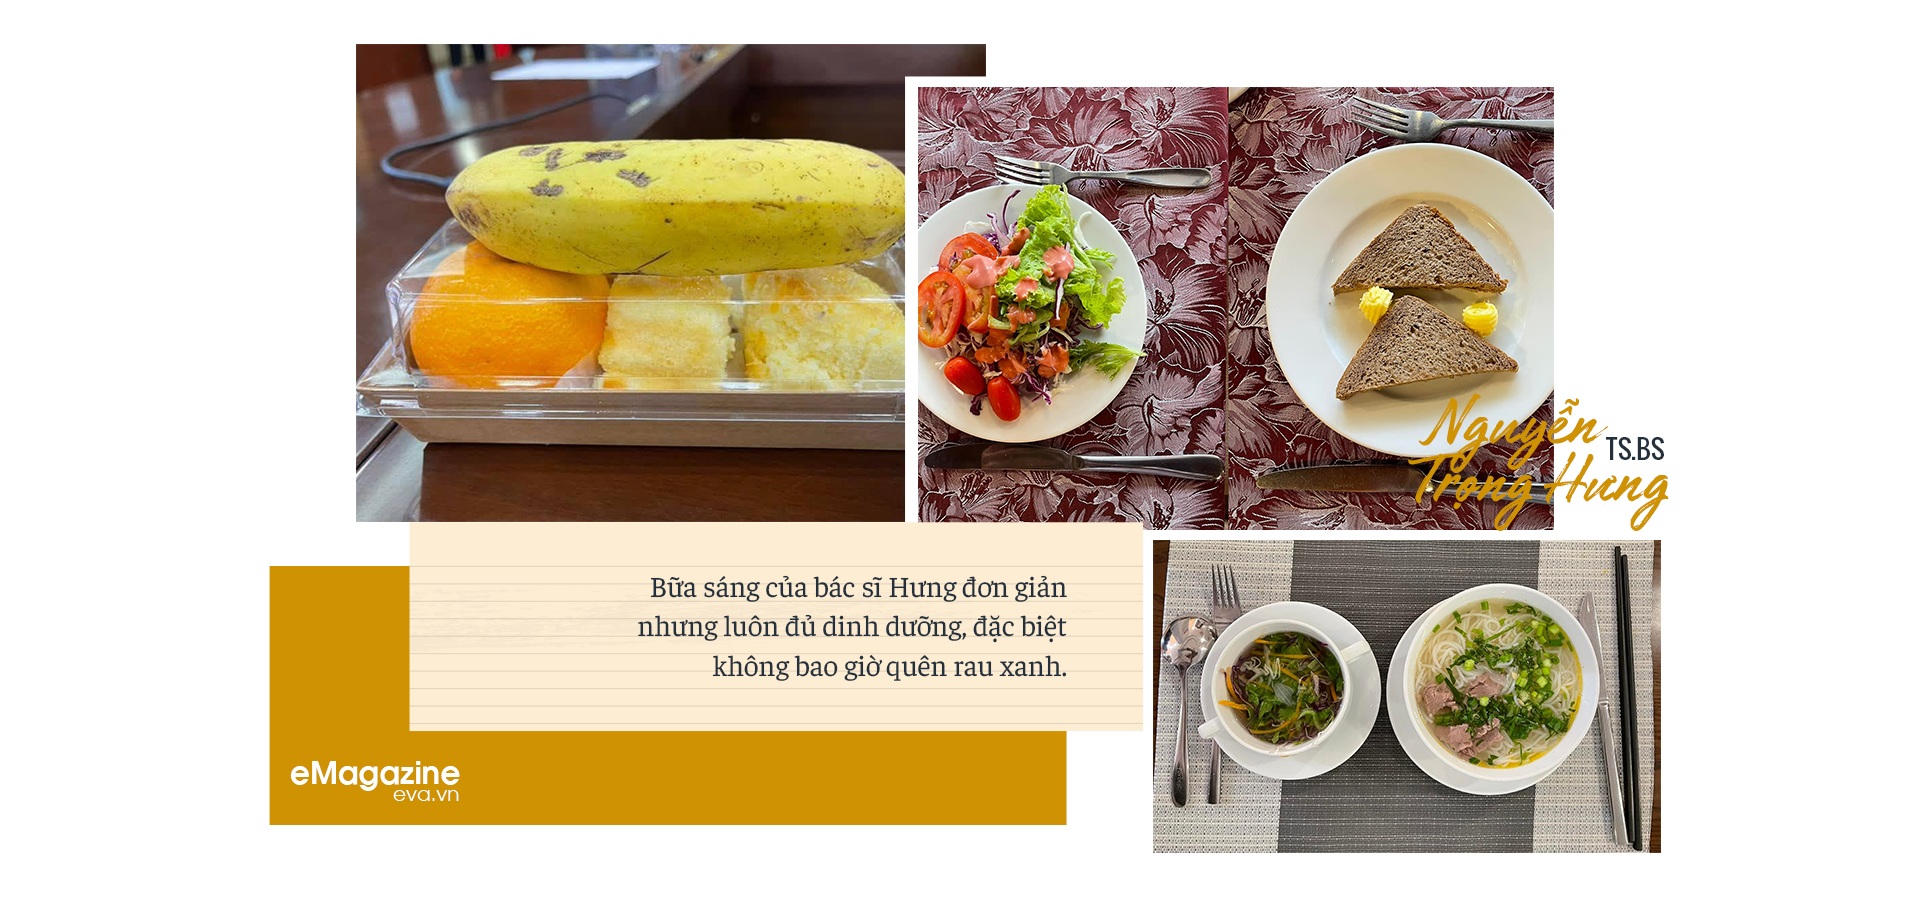 Tiến sĩ dinh dưỡng du học Nhật về chỉ thích ăn kiểu Việt và quy tắc ăn uống 80-20 để không bao giờ thừa cân - 17